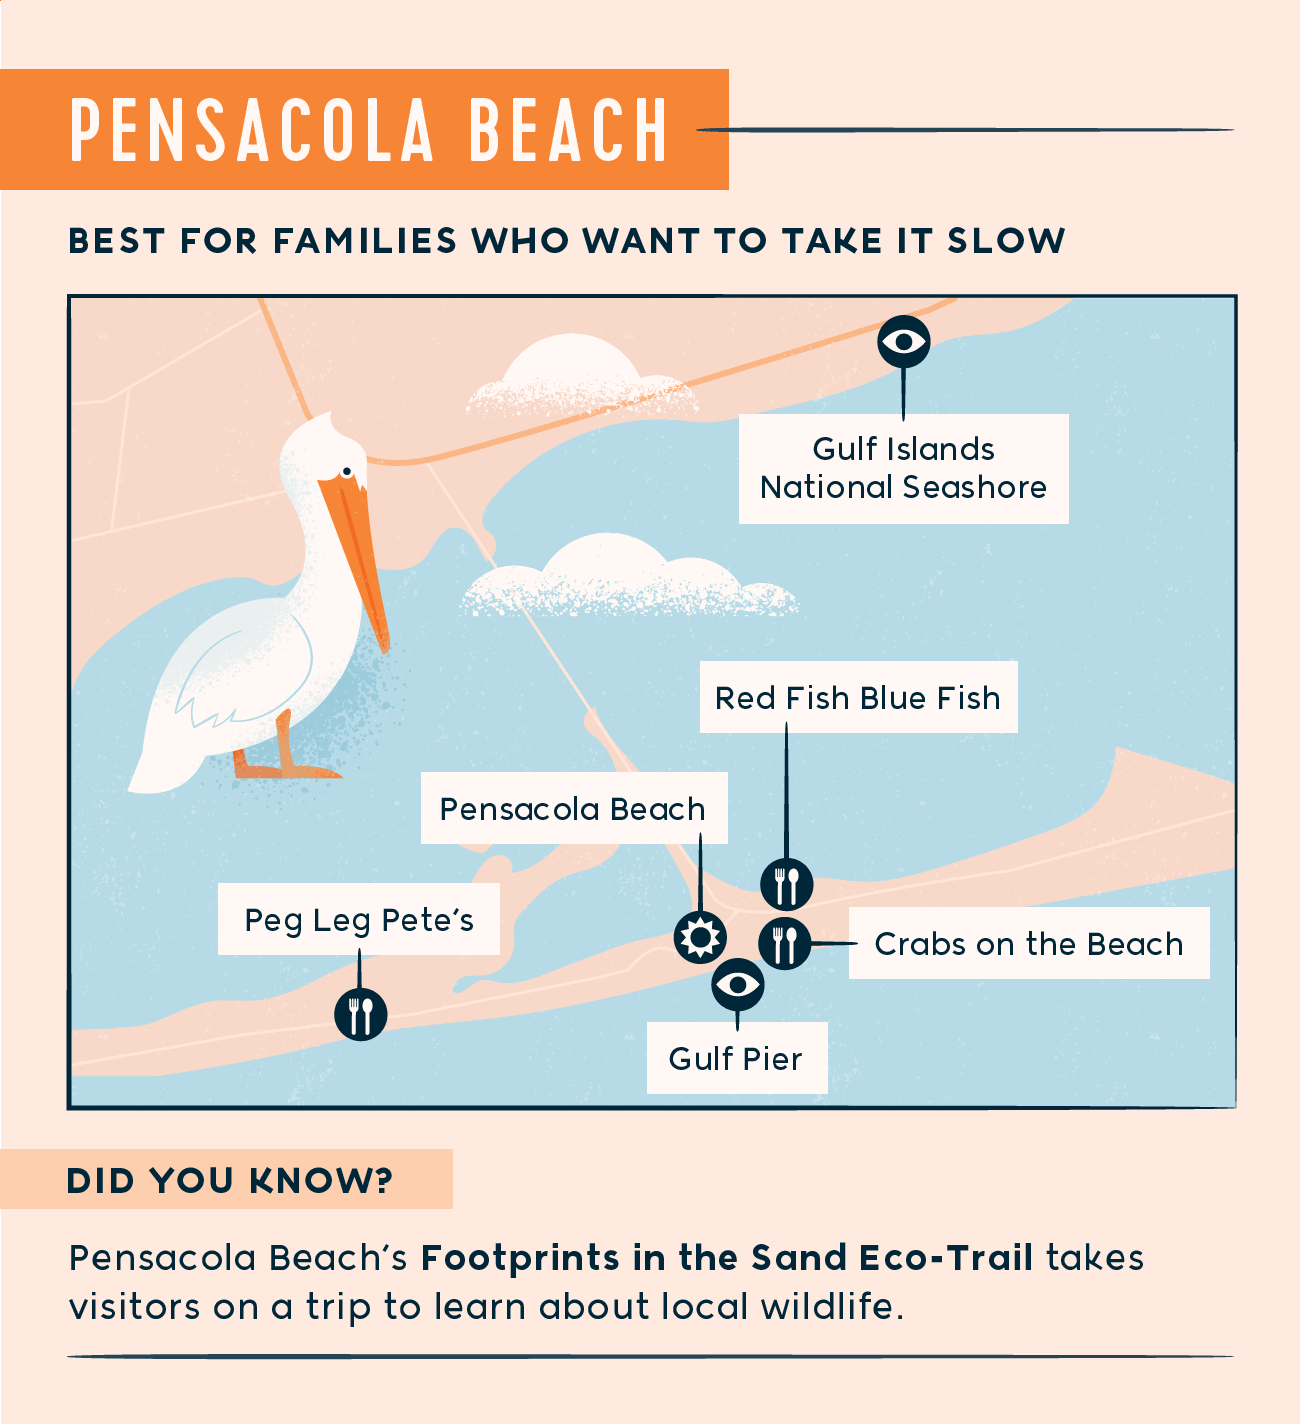 Pensacola Beach map